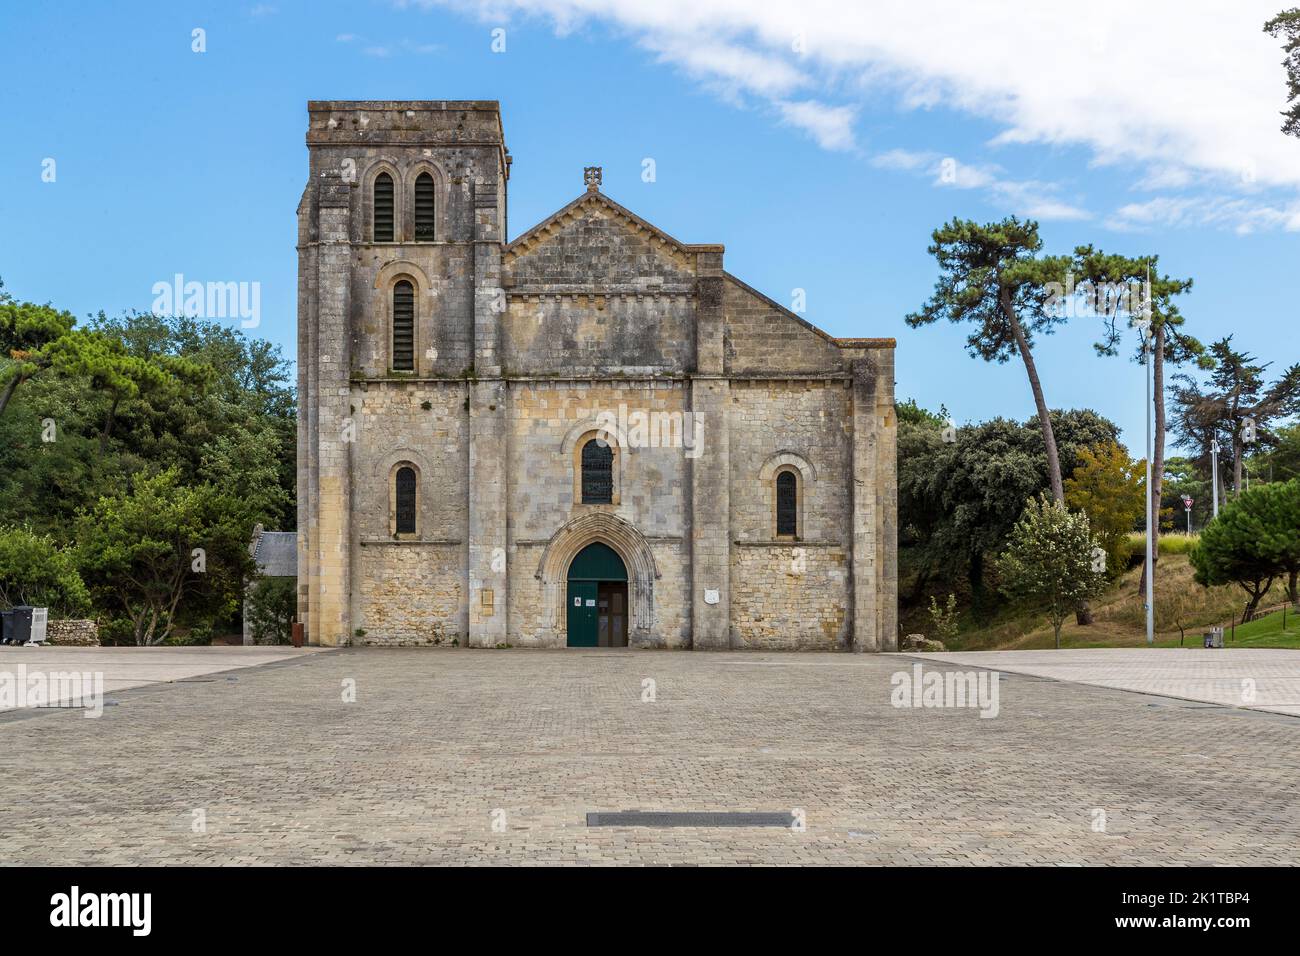 Die Wallfahrtskirche Notre-Dame-de-la-fin-des-Terres in Soulac-sur-Mer ist eine ehemalige Benediktinerkirche aus dem 12.. Jahrhundert, Lesparre-Médoc, Frankreich Stockfoto